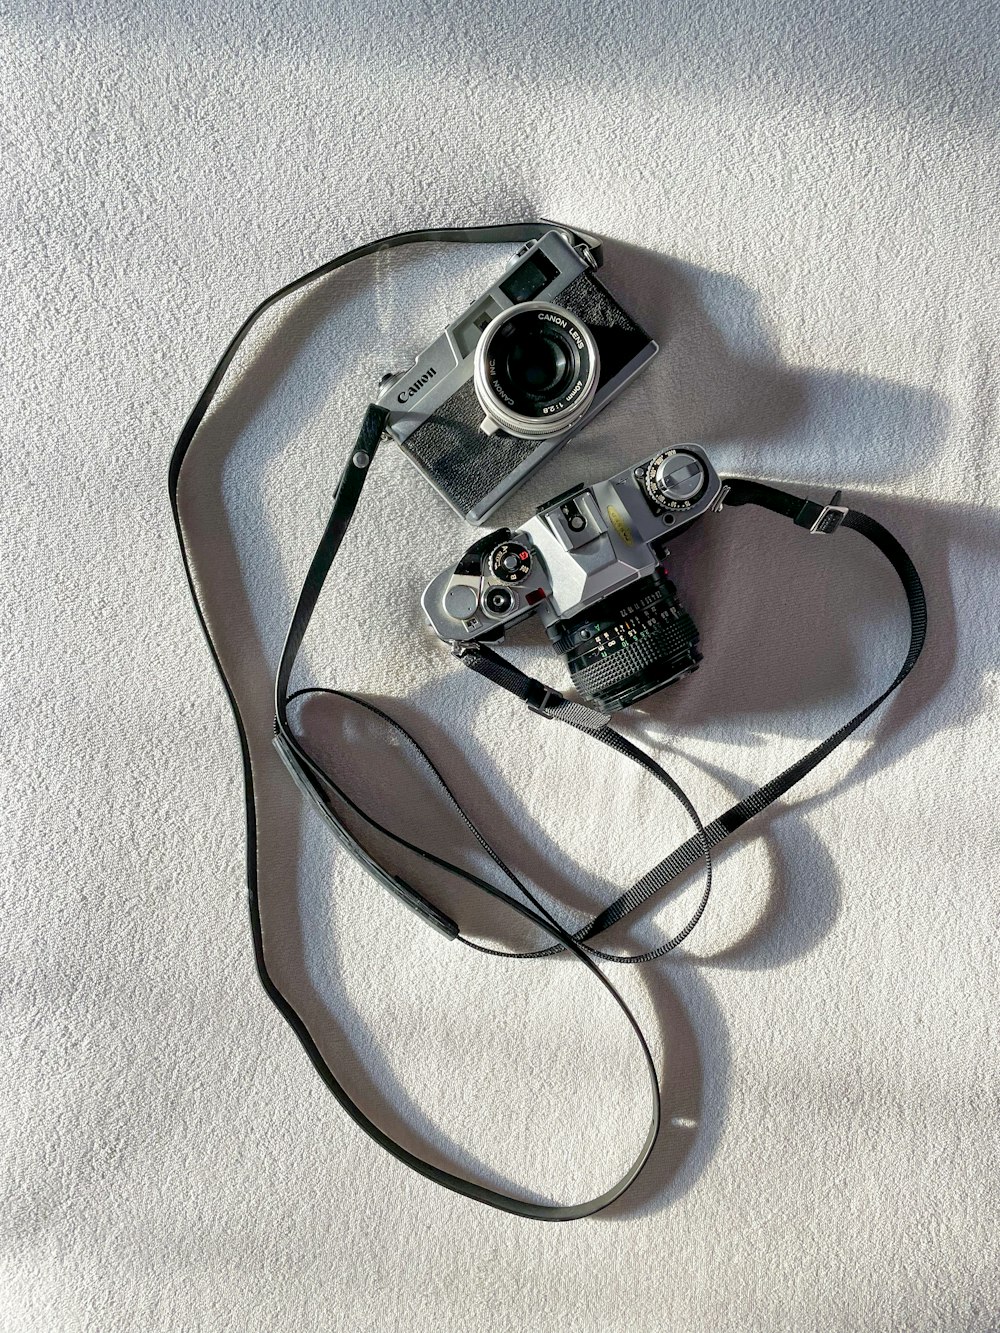 Una cámara sentada encima de una manta blanca